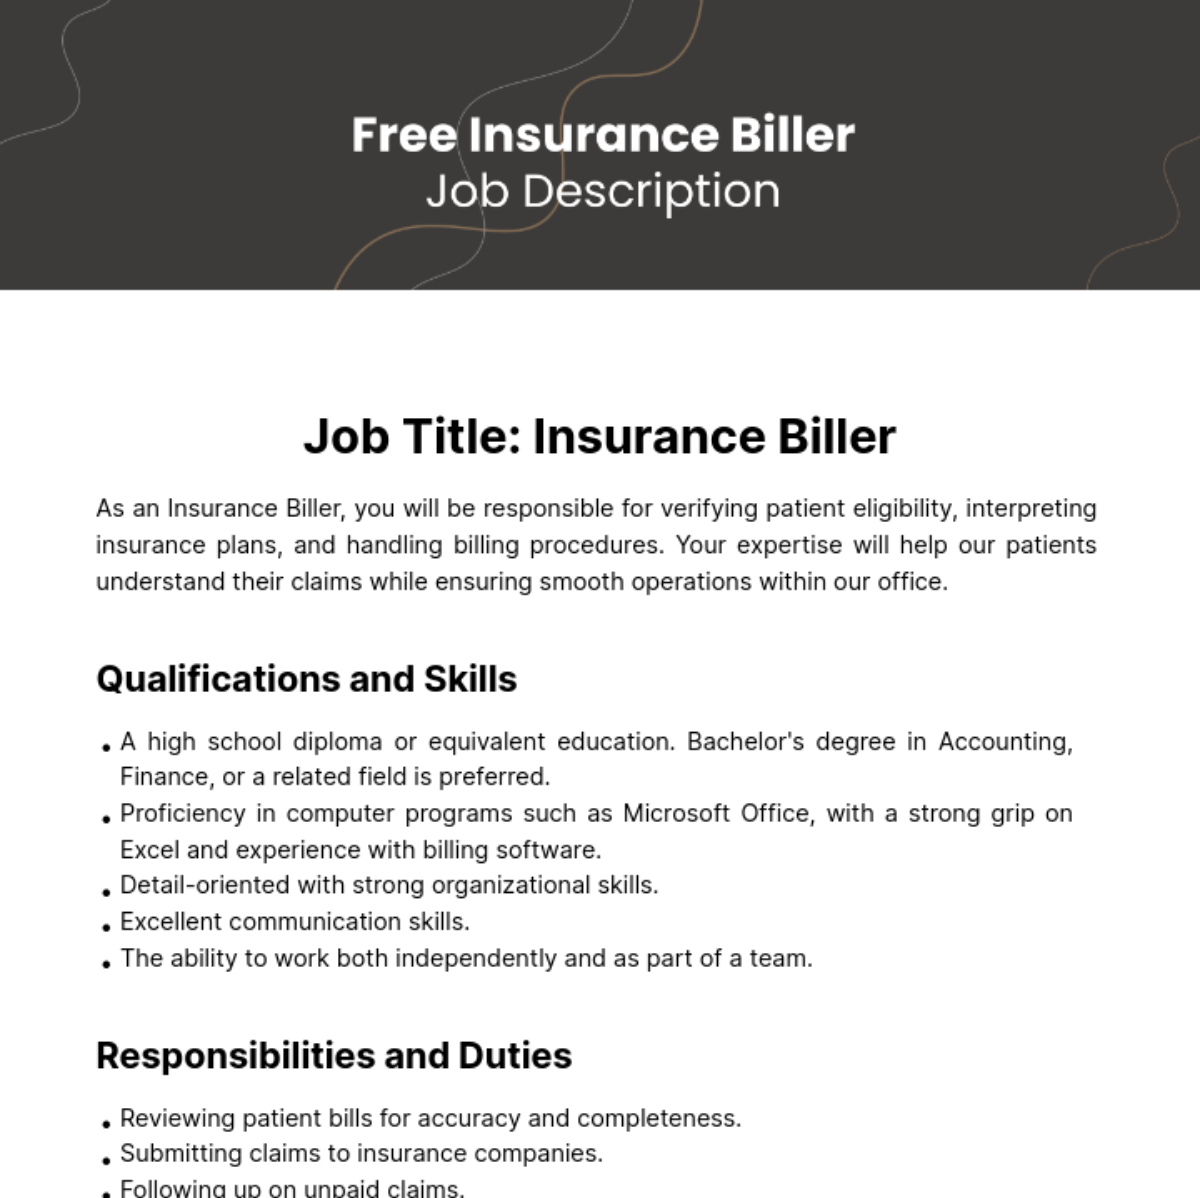 Free Insurance Biller Job Description Template